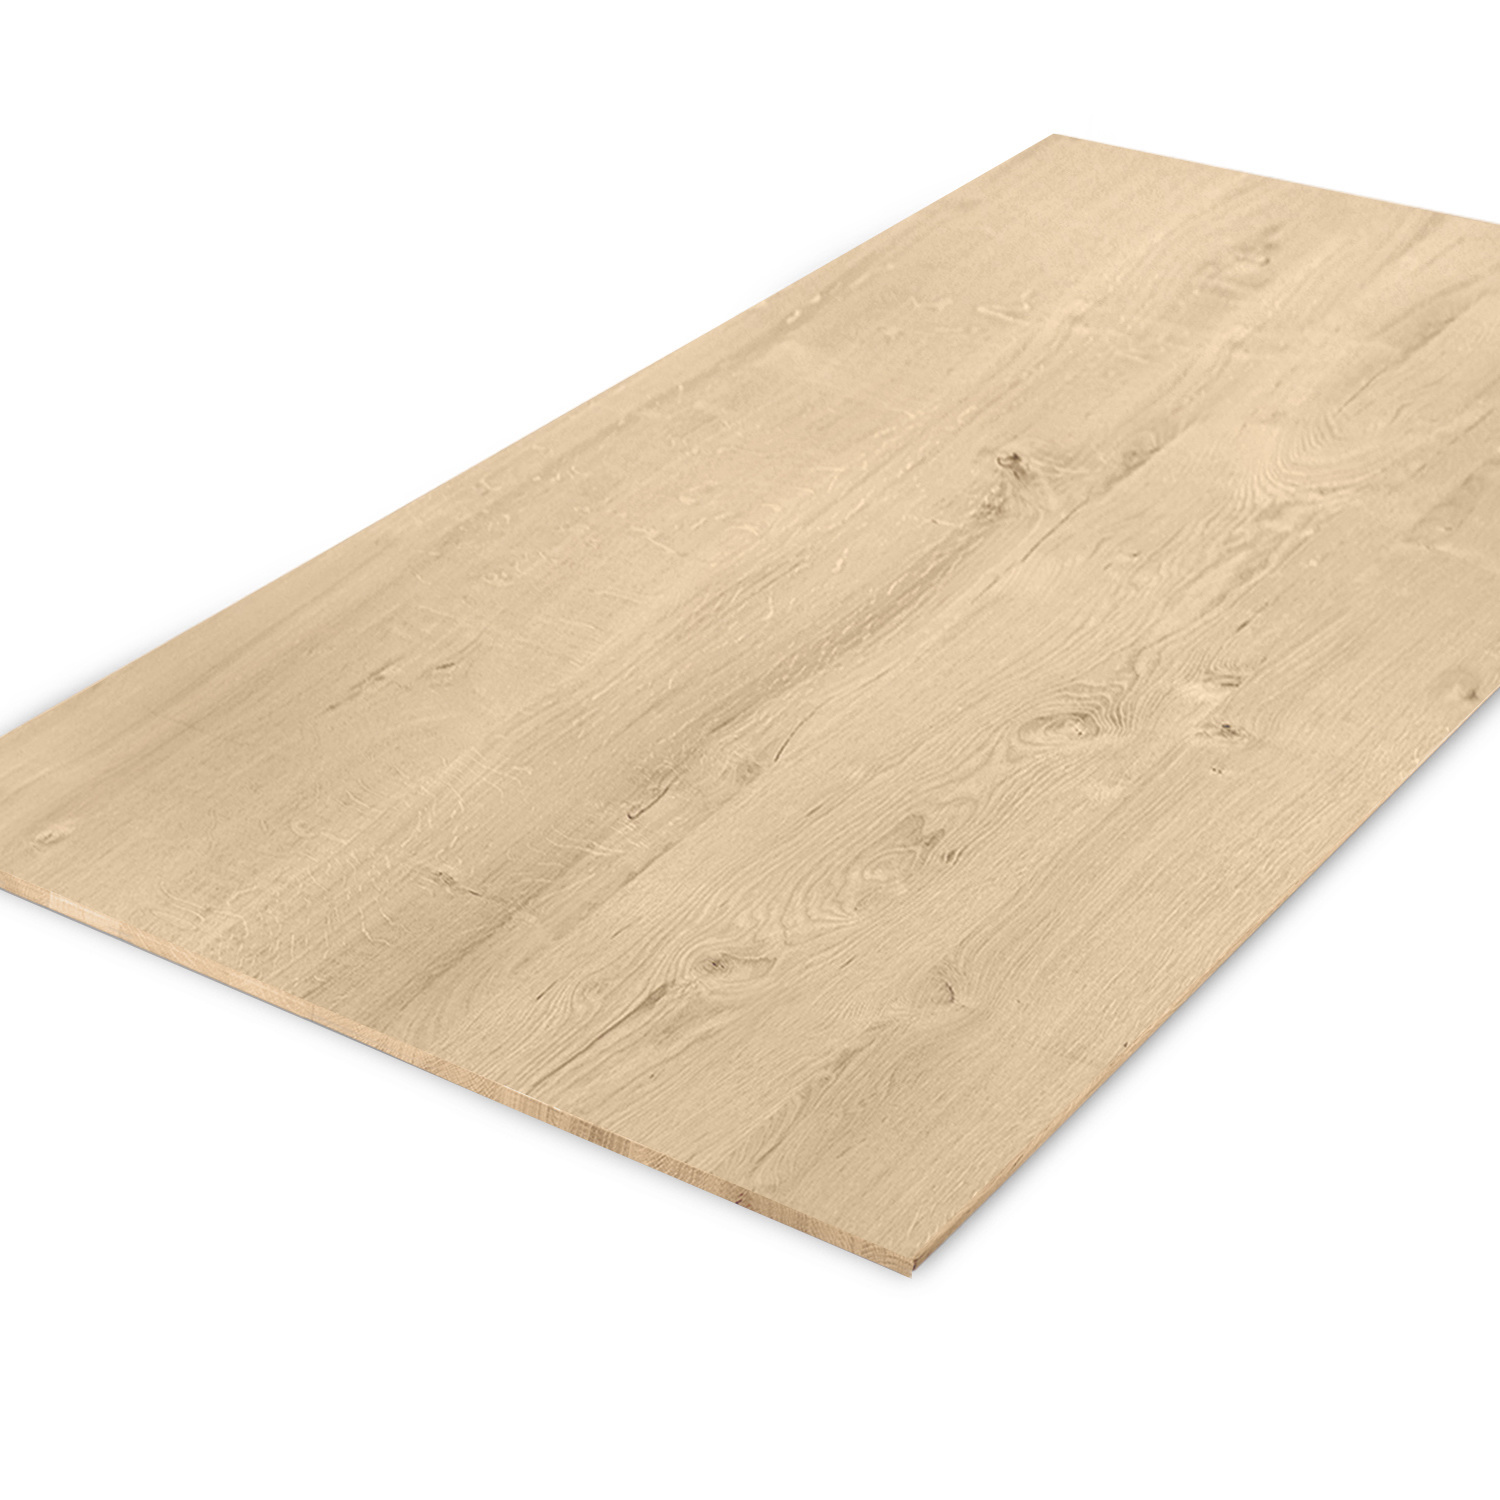  Eiken tafelblad met verjongde rand - 2,7 cm dik (1-laag) - Diverse afmetingen - rustiek Europees eikenhout - met brede lamellen (circa 10-12 cm) - verlijmd kd 8-12%